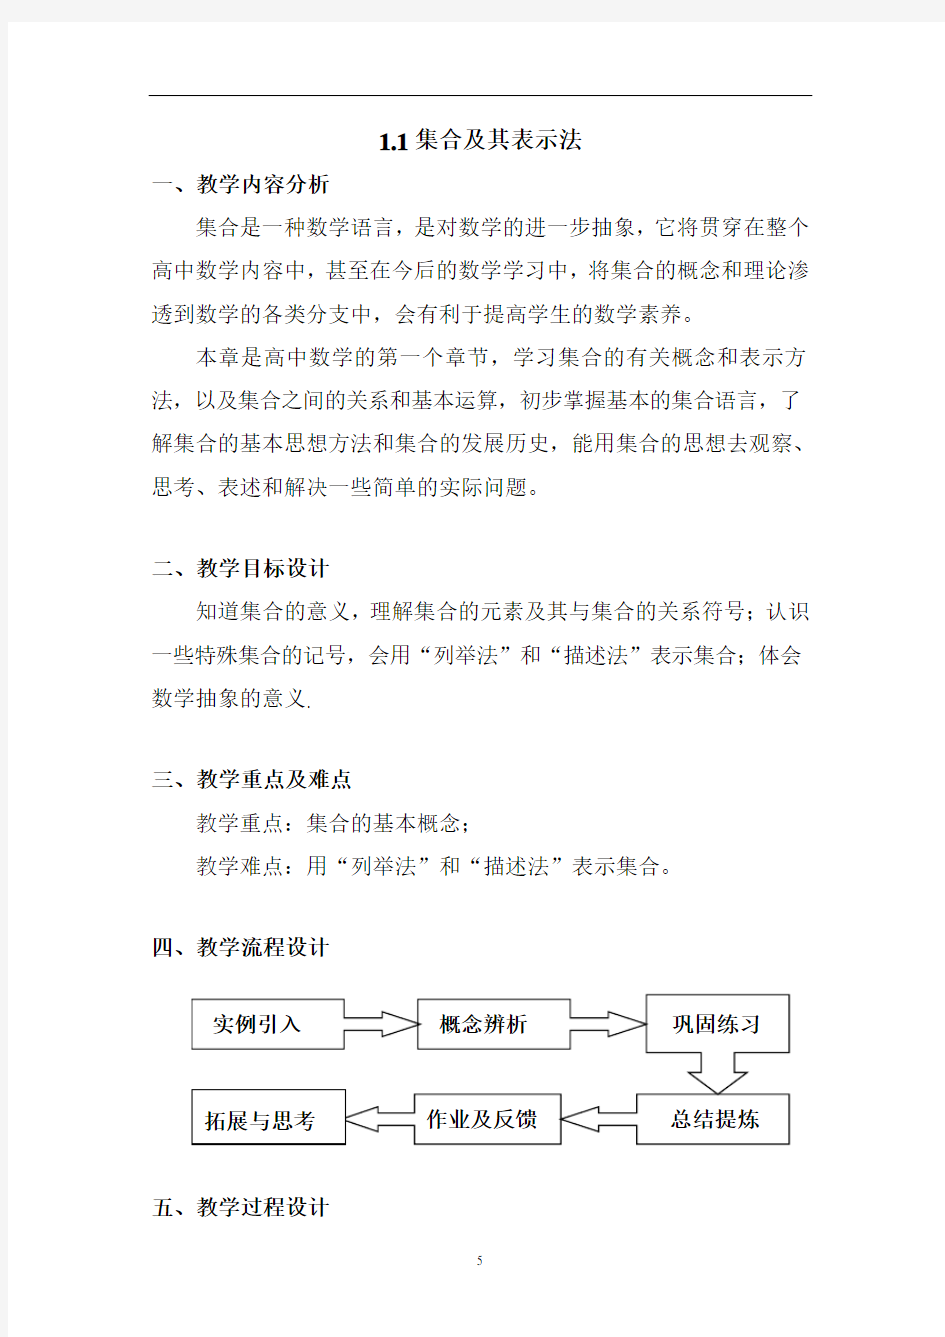 沪教版(上海)数学高一上册-1.1 集合及其表示法 教案   